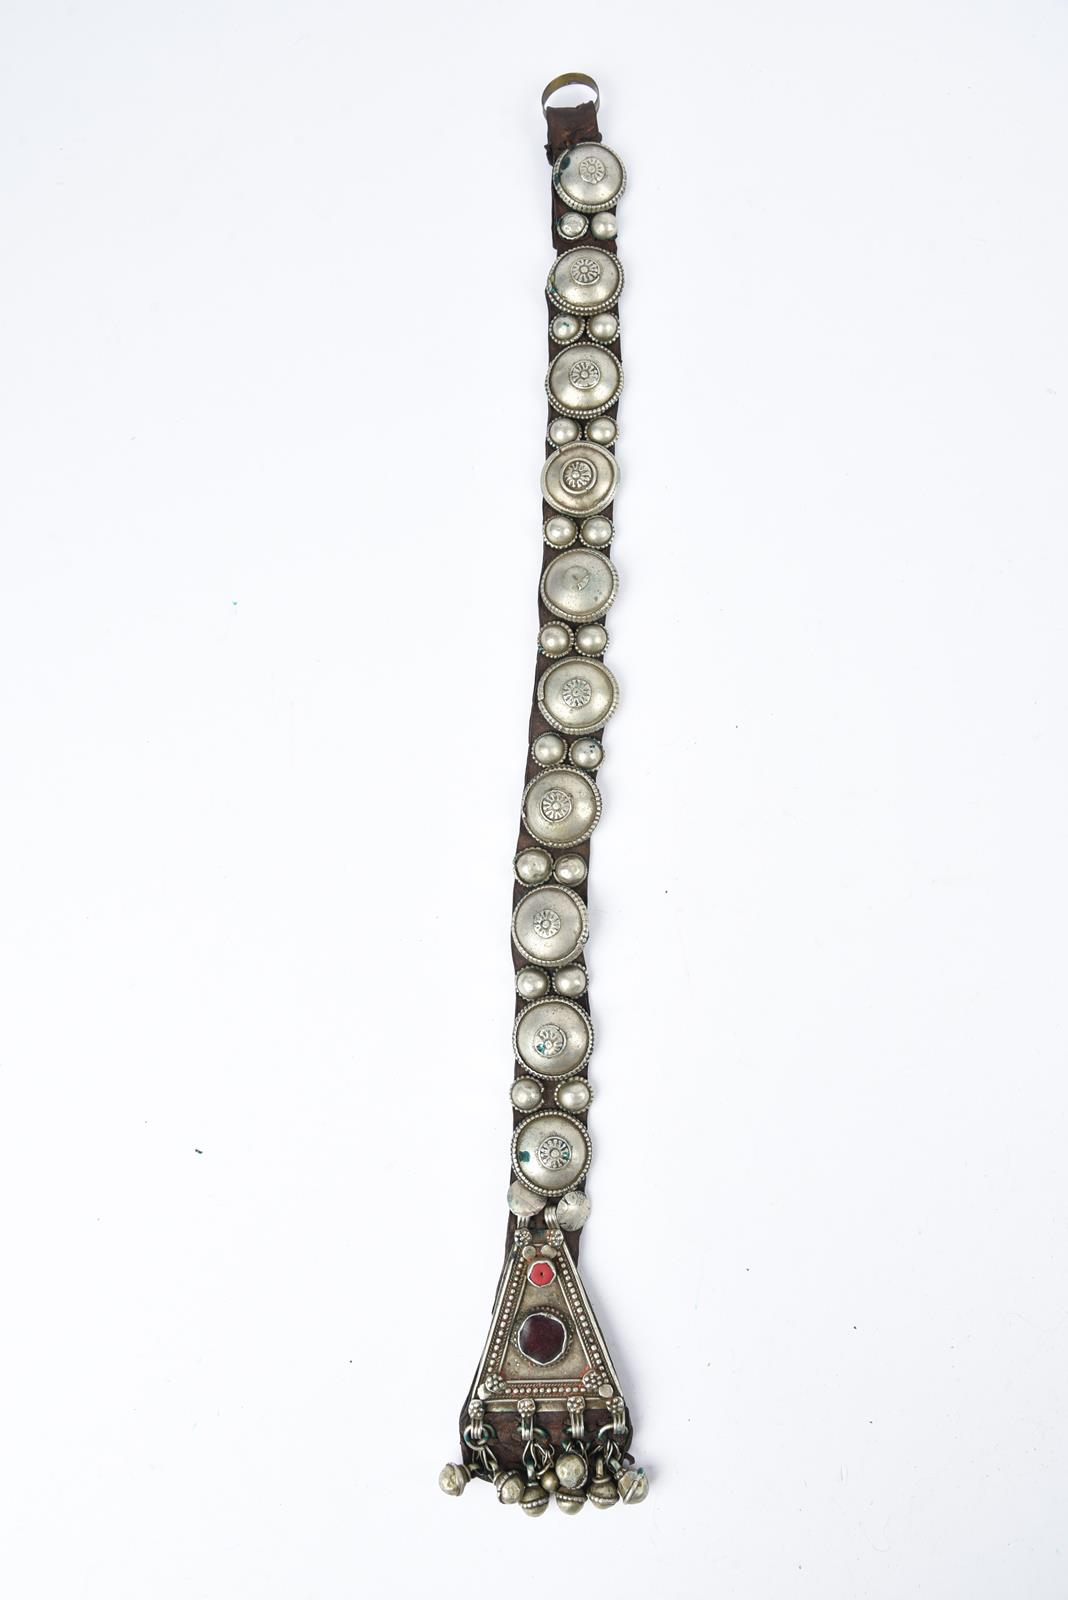 λA Bedouin amulet chest ornament cloth with numerous sewn on amulets and beads, 62cm long, and three - Image 10 of 27